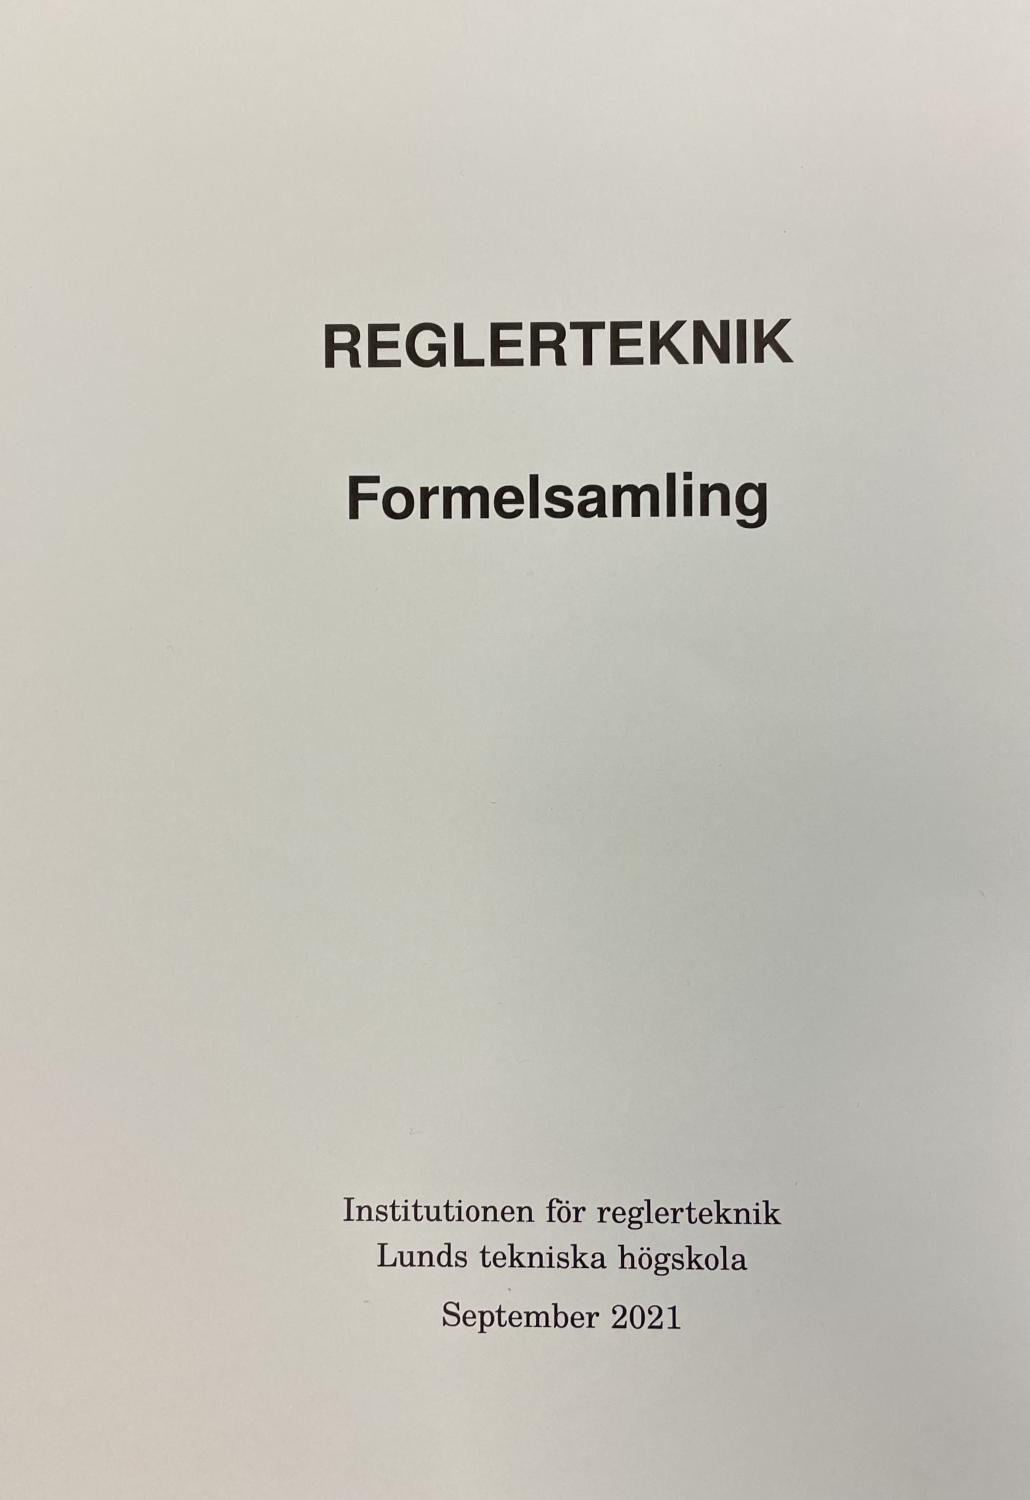 Reglerteknik Formelsamling, September 2021